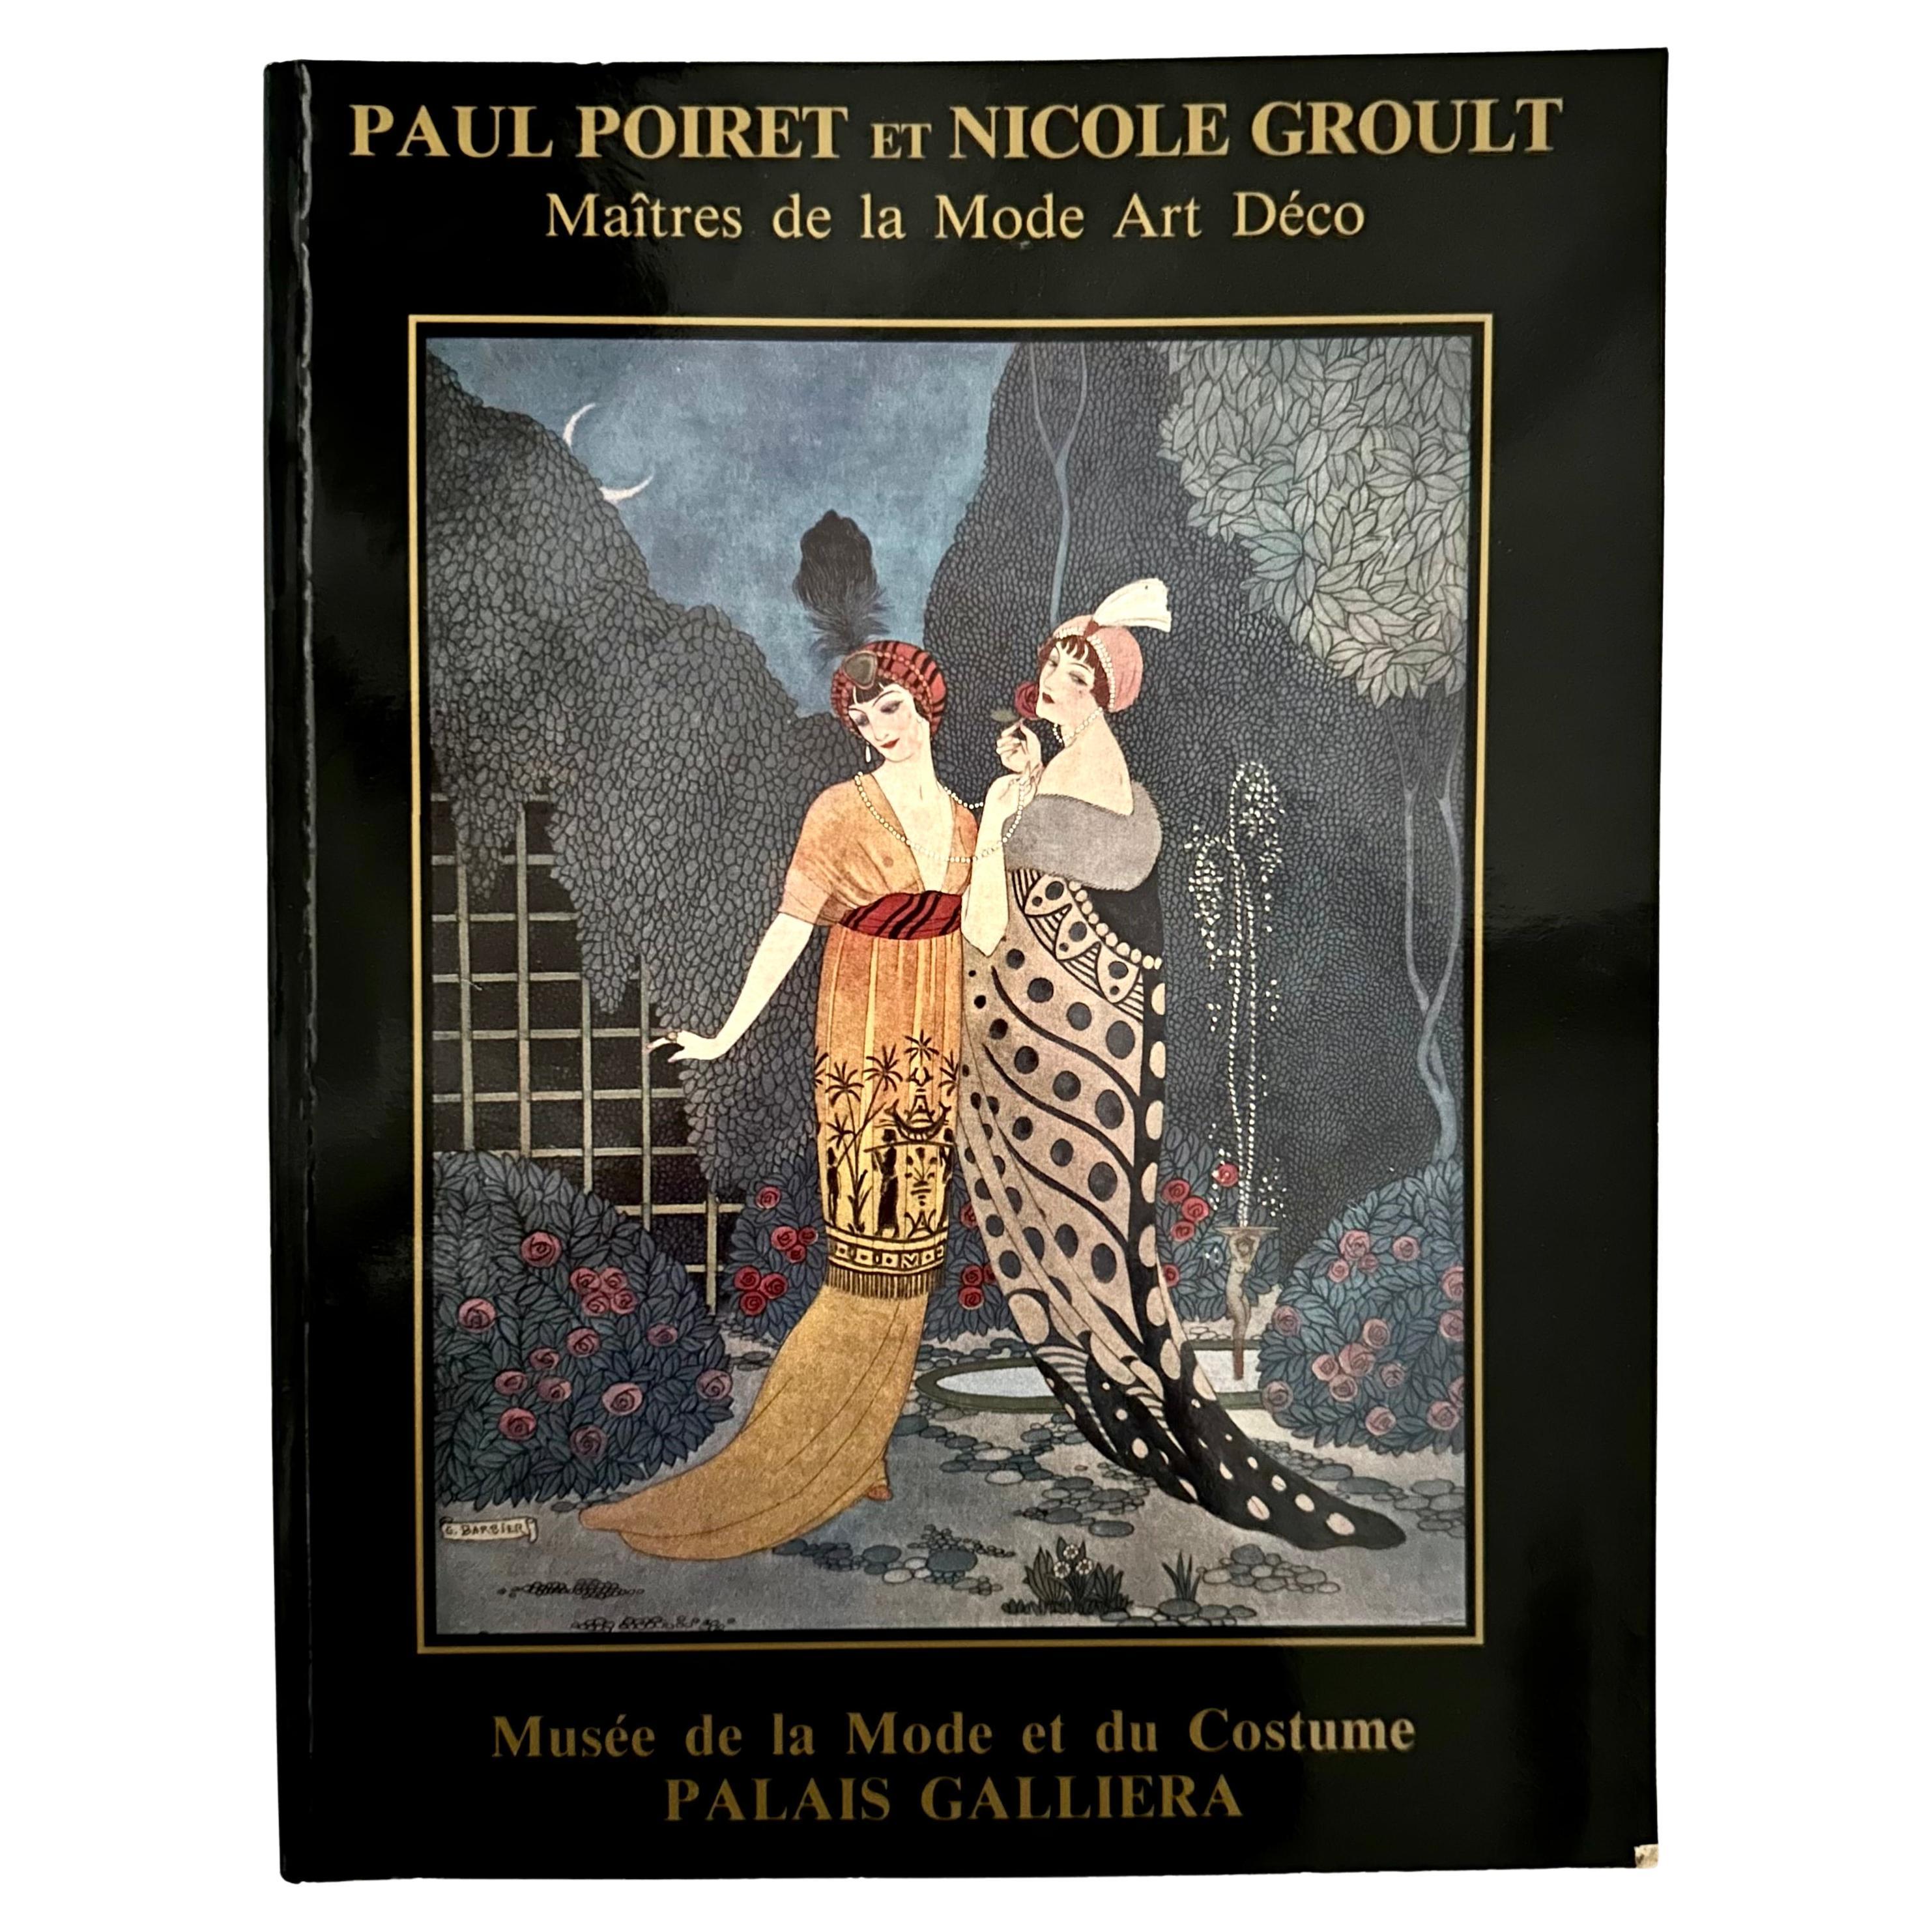 Paul Poiret et Nicole Groult: Maître de la Mode Art Déco - 1st Ed., Paris, 1986